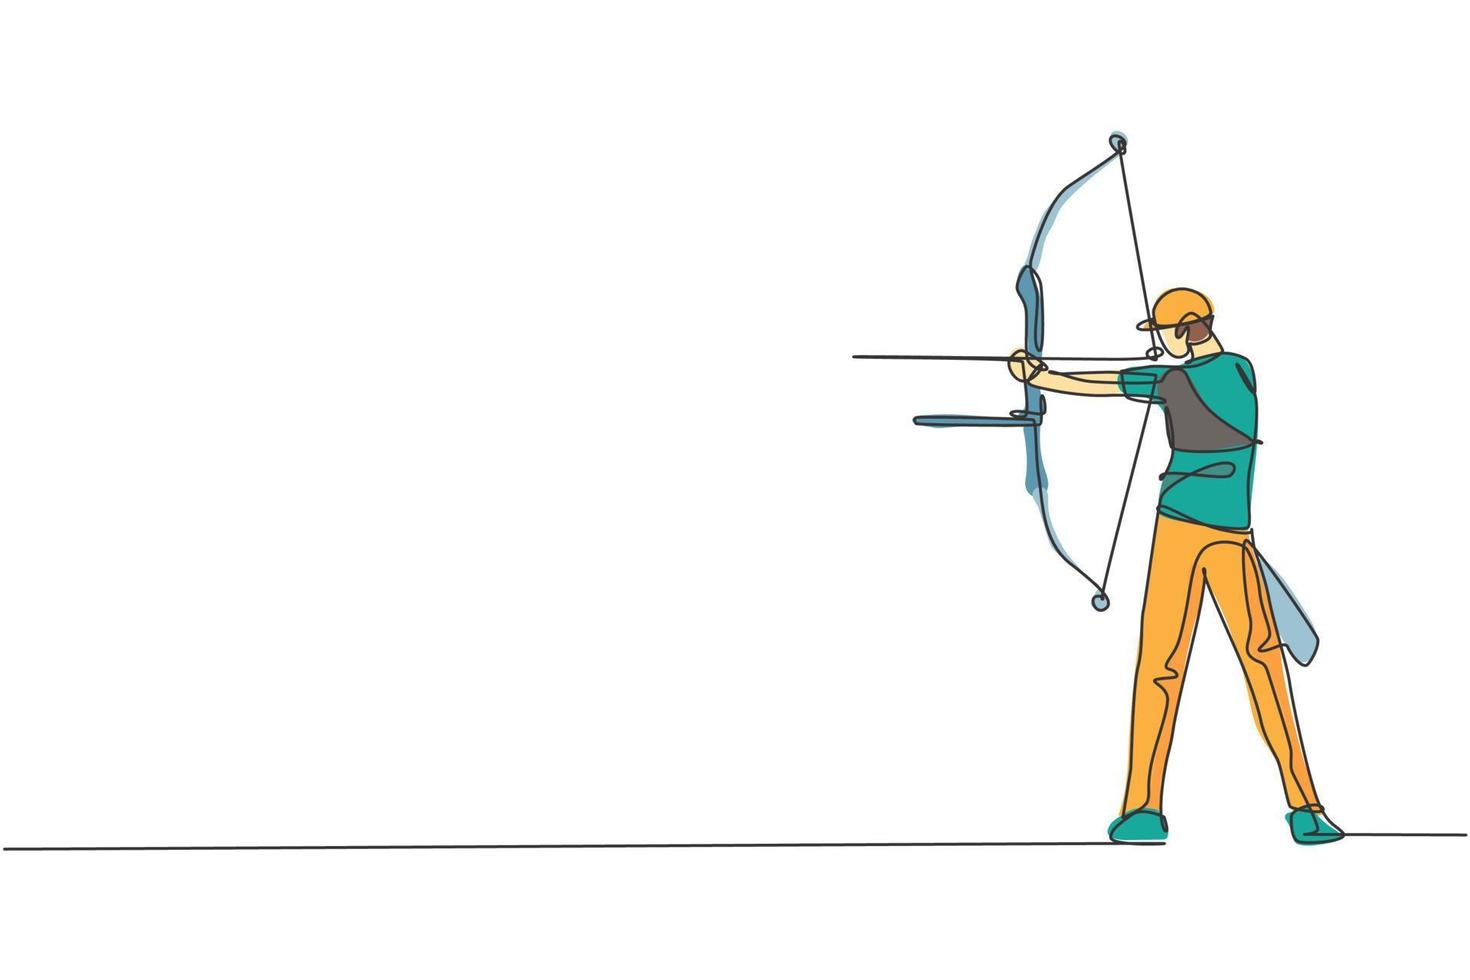 un disegno a linea singola di un giovane arciere che esercita il tiro con l'arco per colpire l'illustrazione grafica vettoriale di destinazione. ripresa sana di aggiornamento con il concetto di sport con l'arco. moderno disegno a linea continua